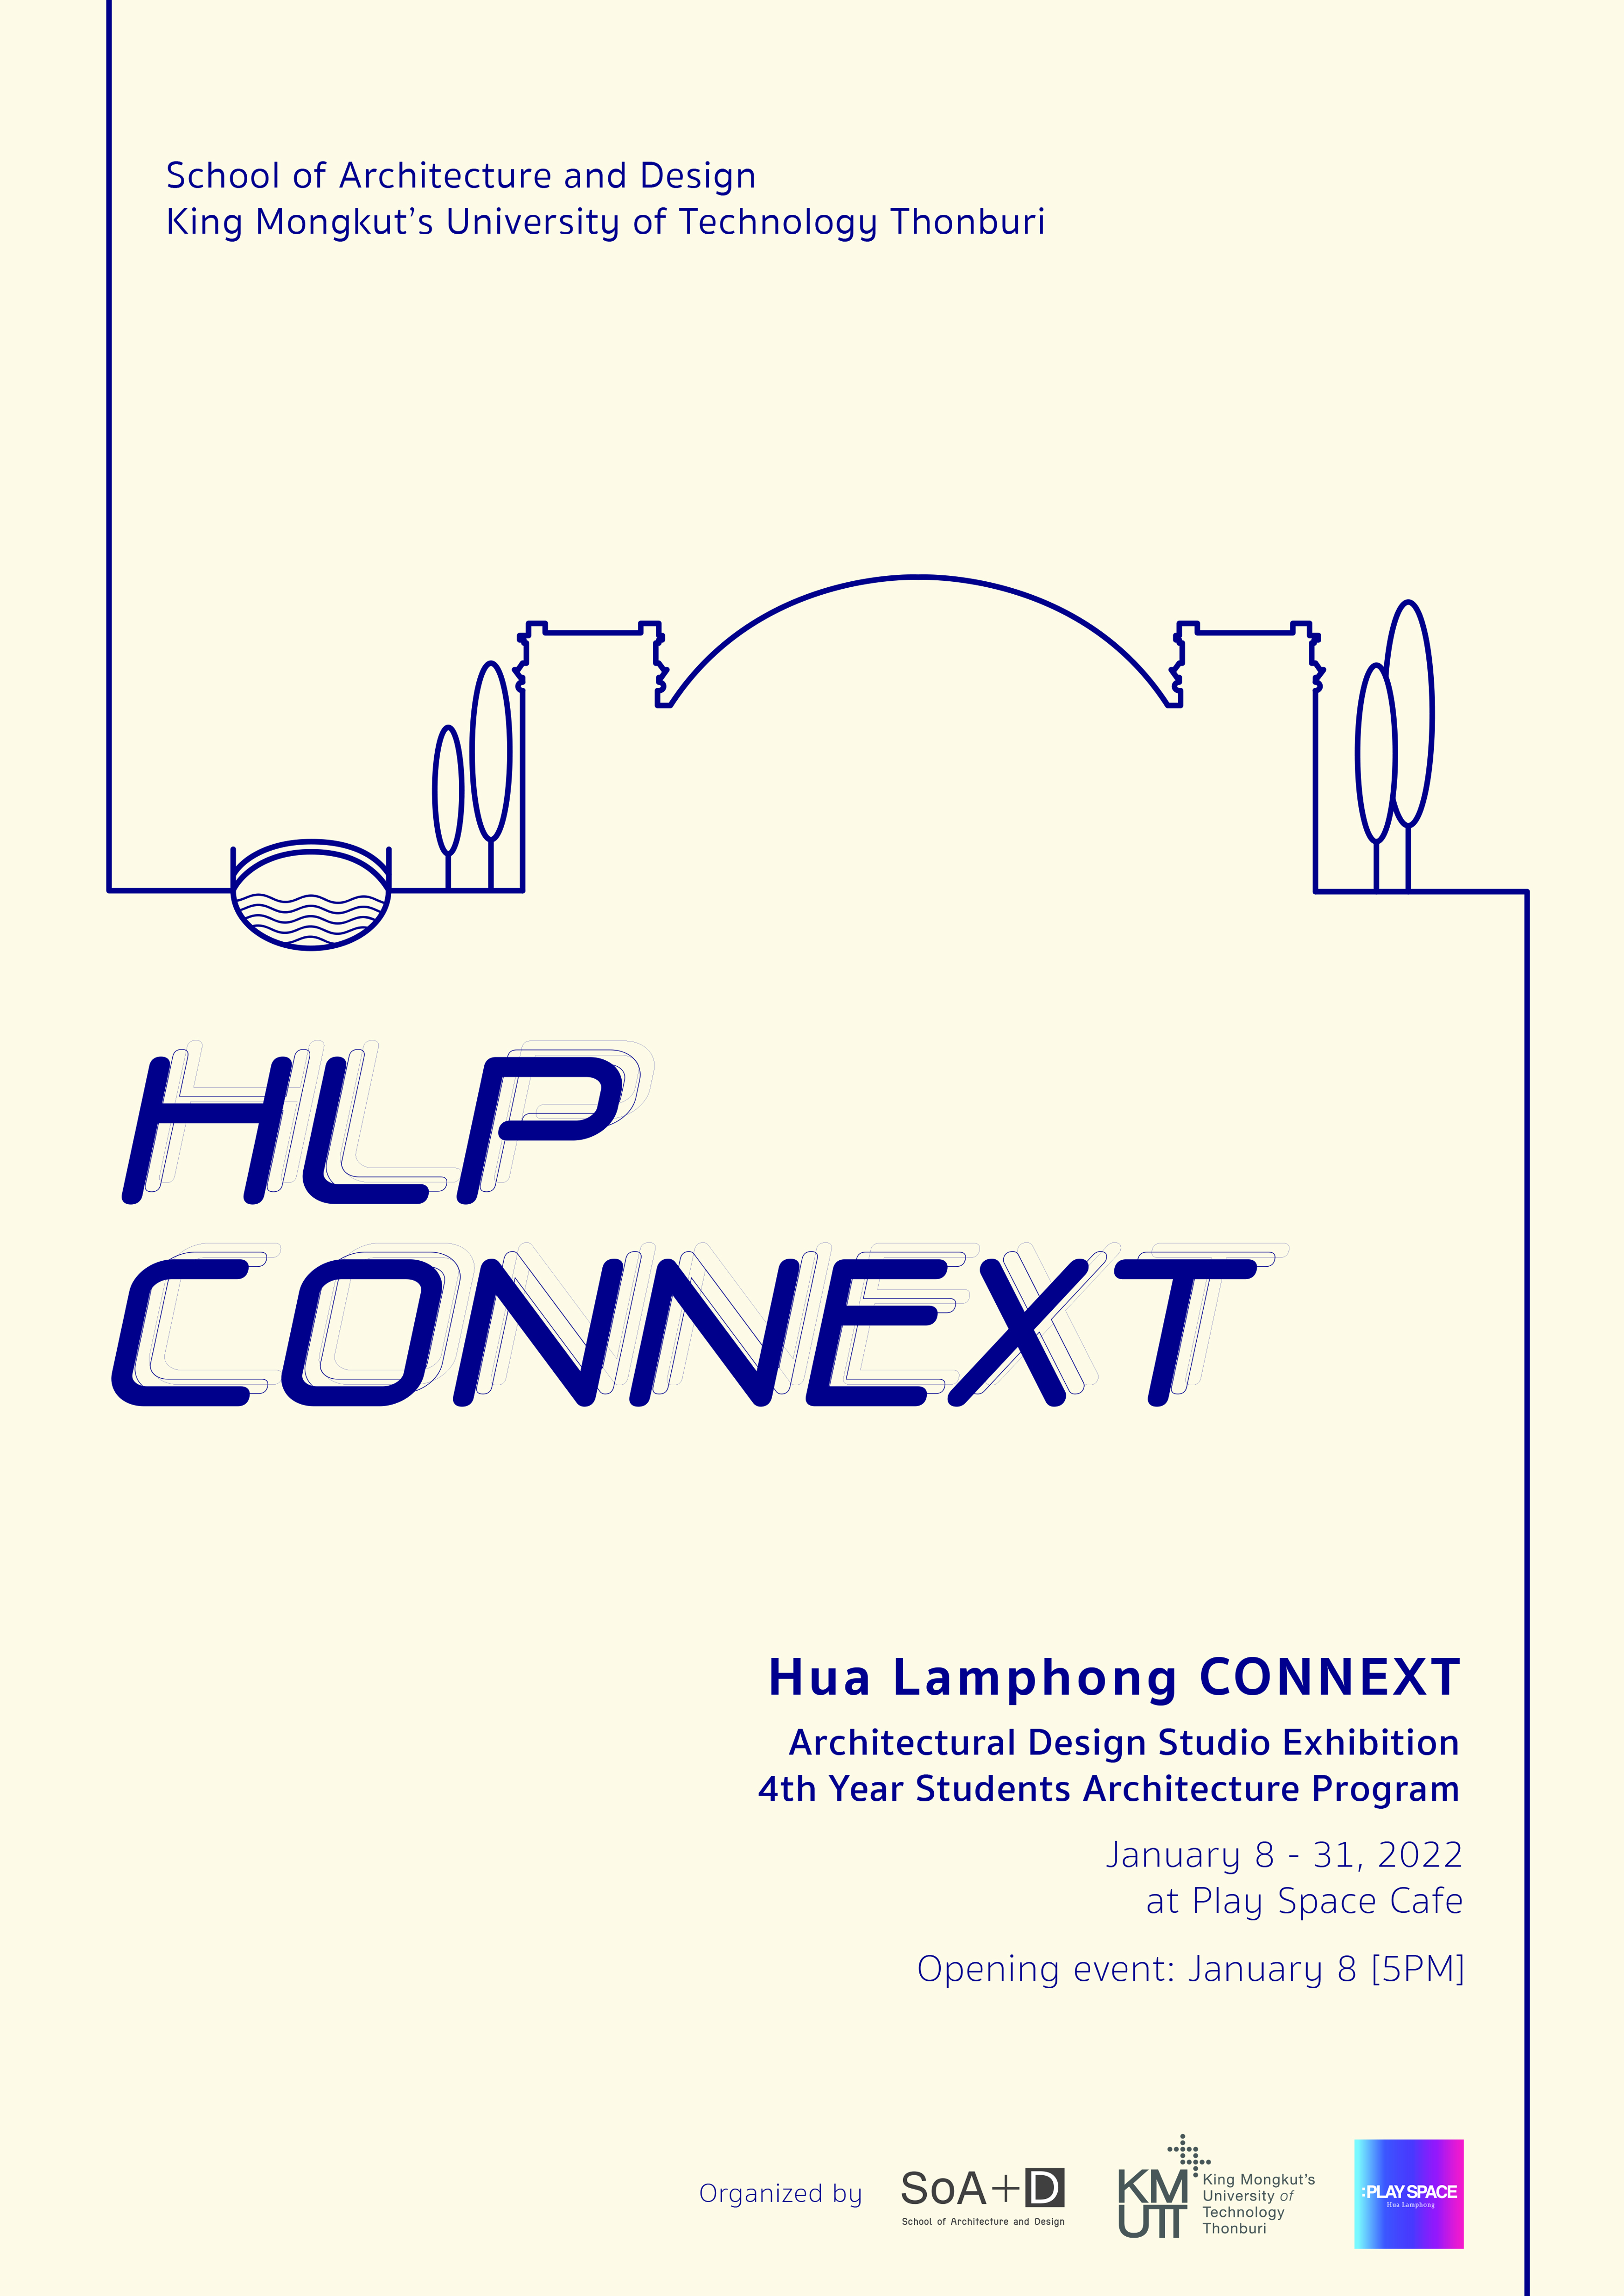 Hua Lamphong Connext